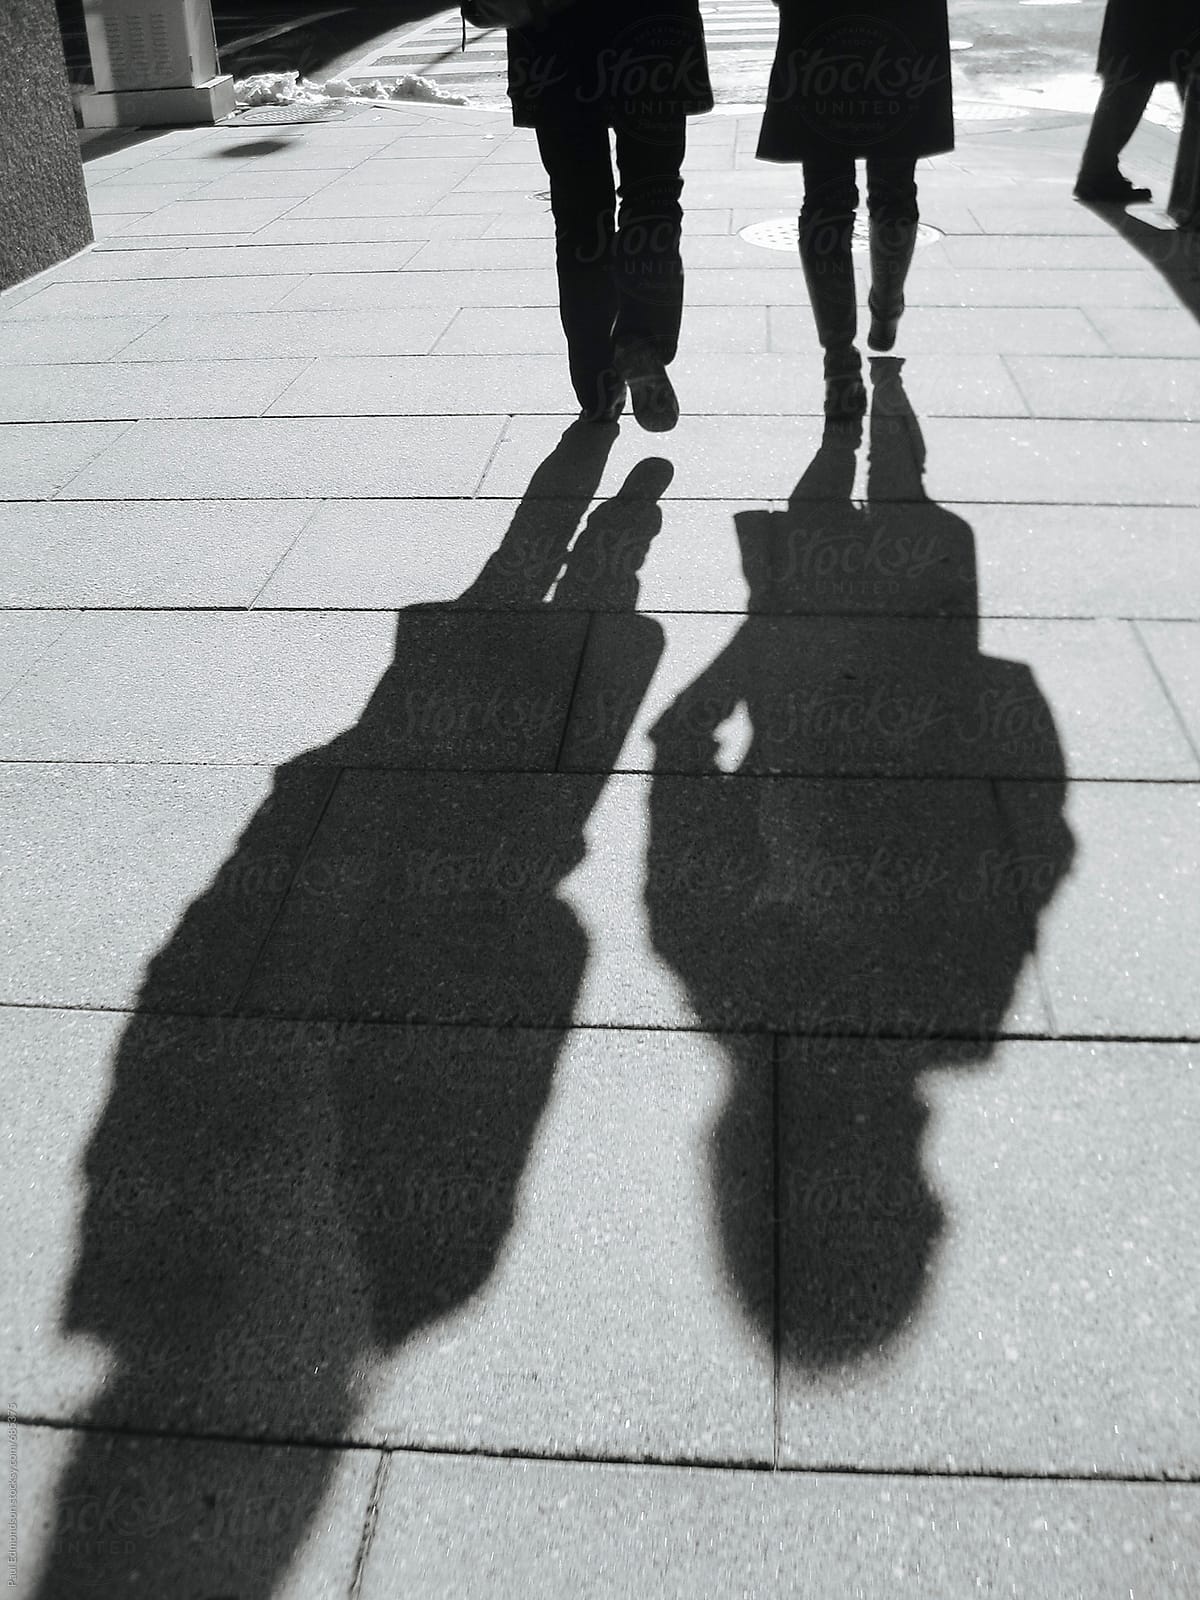 Pedestrians casting long shadows on urban sidewalk